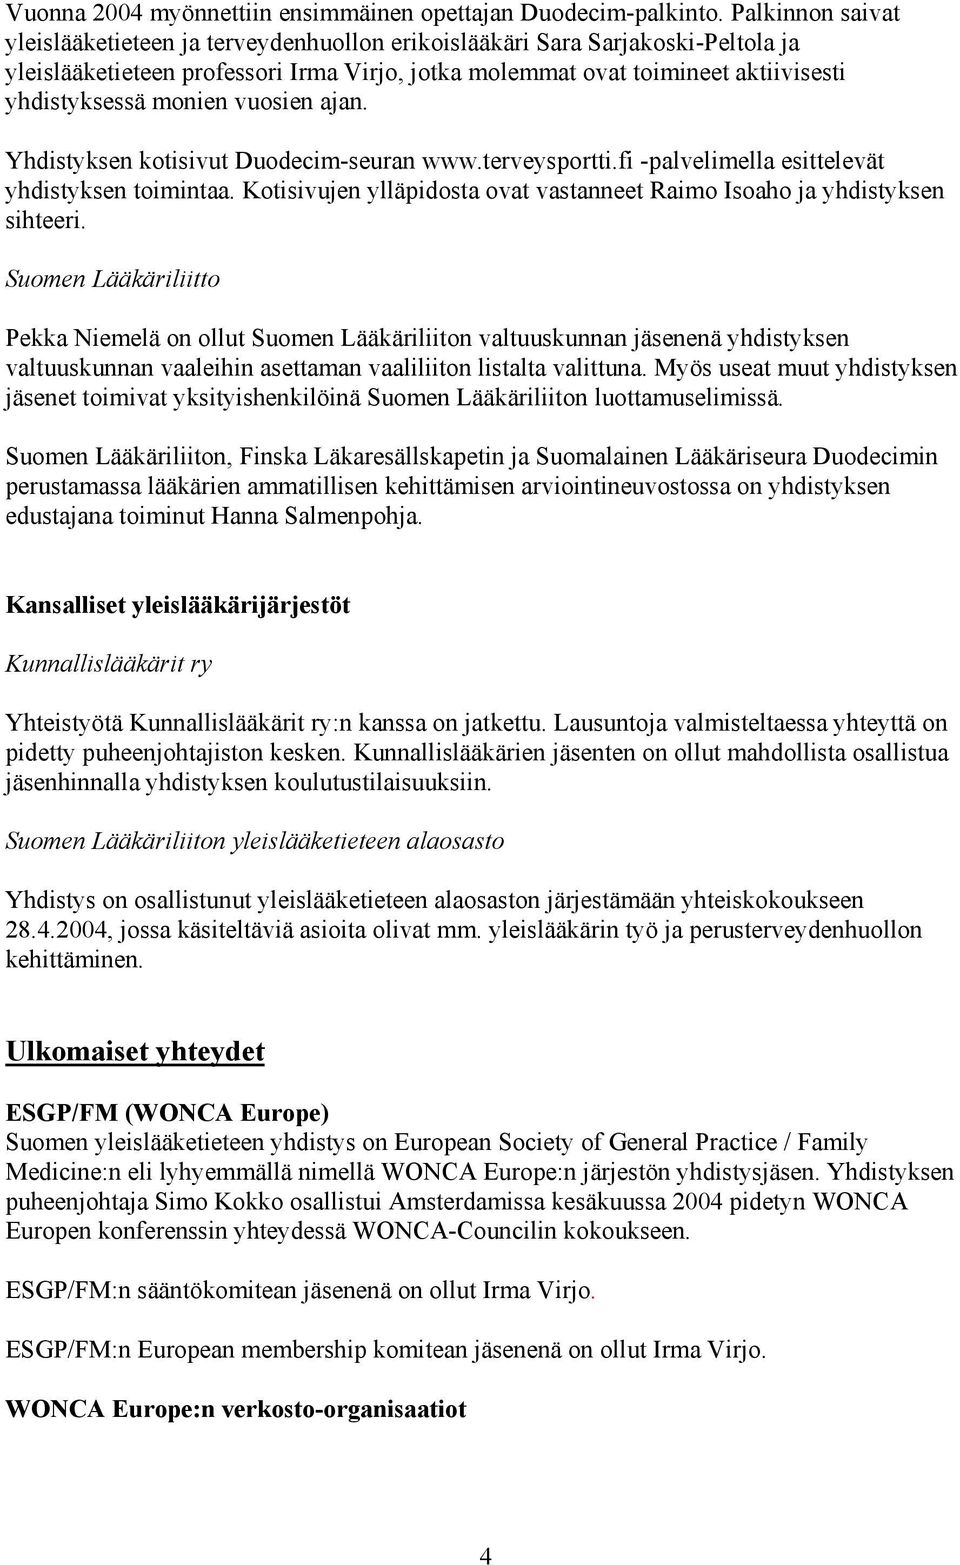 monien vuosien ajan. Yhdistyksen kotisivut Duodecim-seuran www.terveysportti.fi -palvelimella esittelevät yhdistyksen toimintaa.